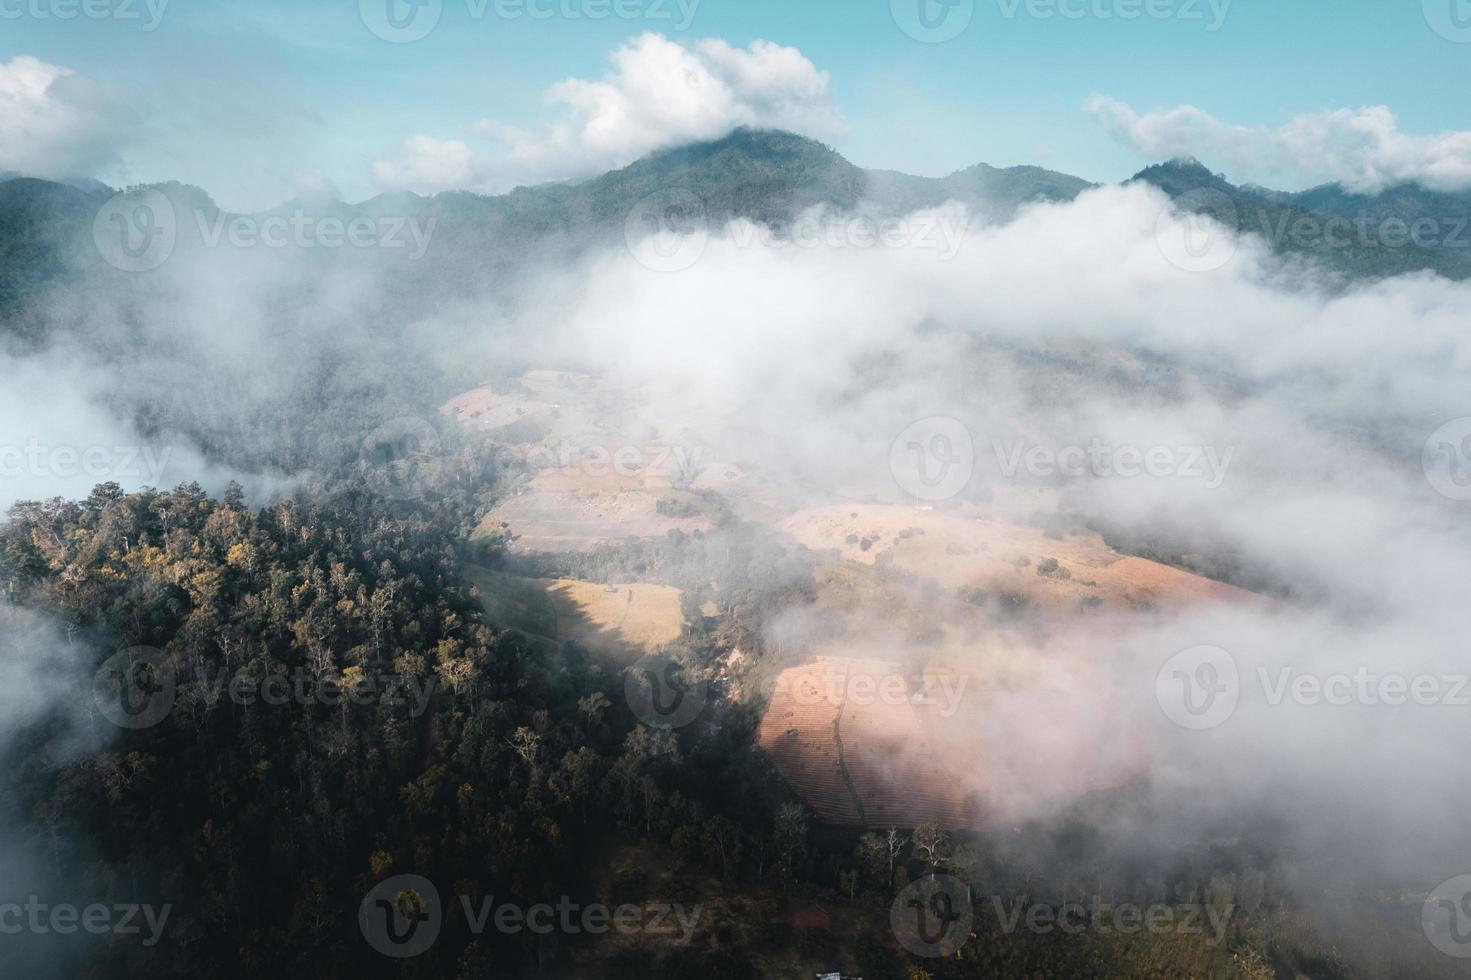 dimma och berg i morgonens höga vinkel foto